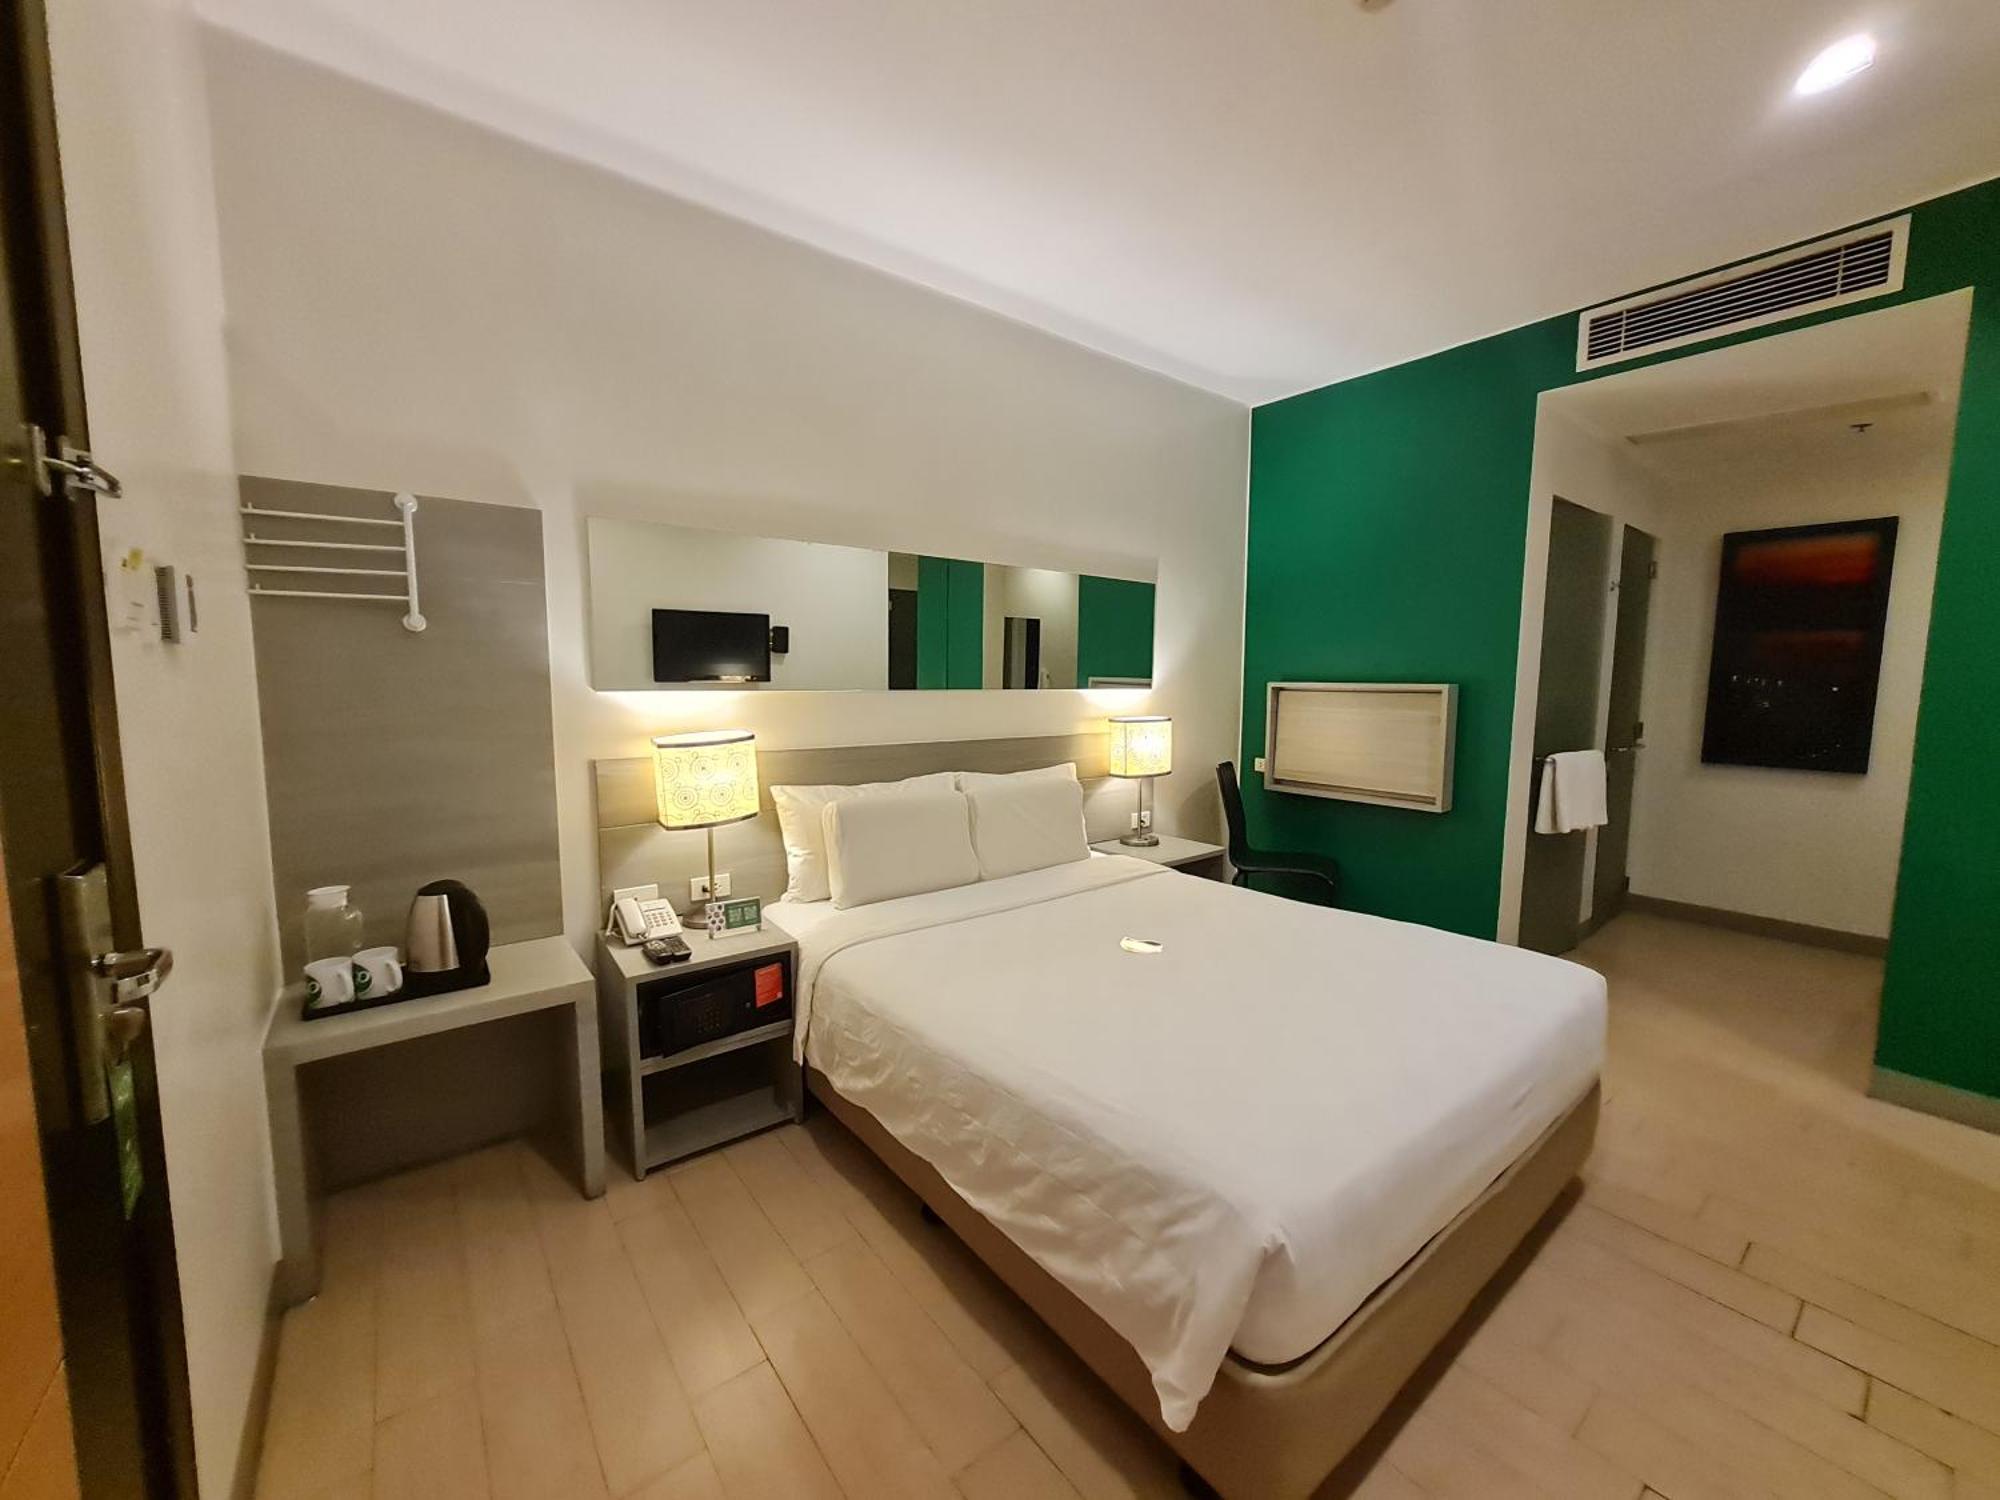 Go Hotels Otis - Manila Eksteriør billede